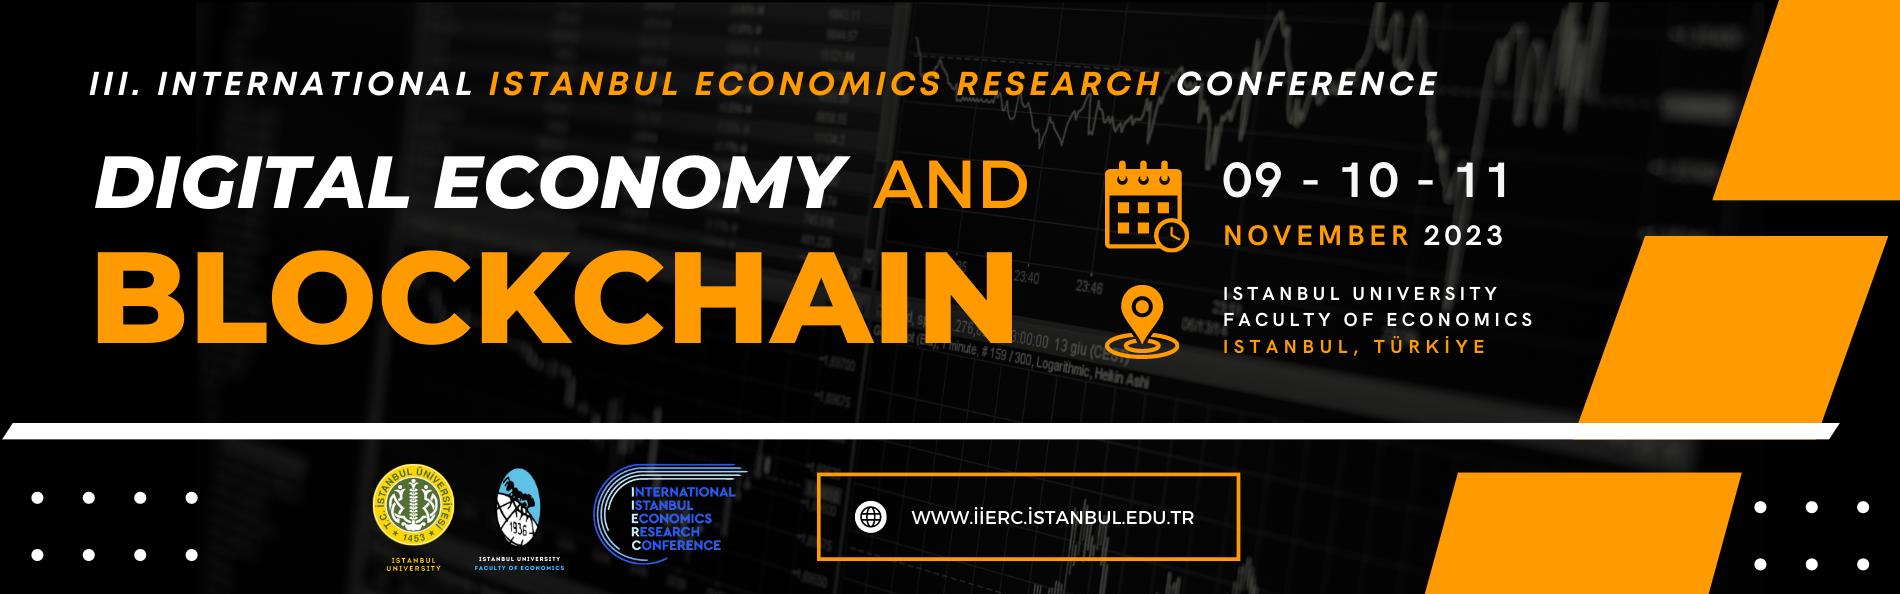 Dijital Ekonomi ve Blockchain Konferansı 